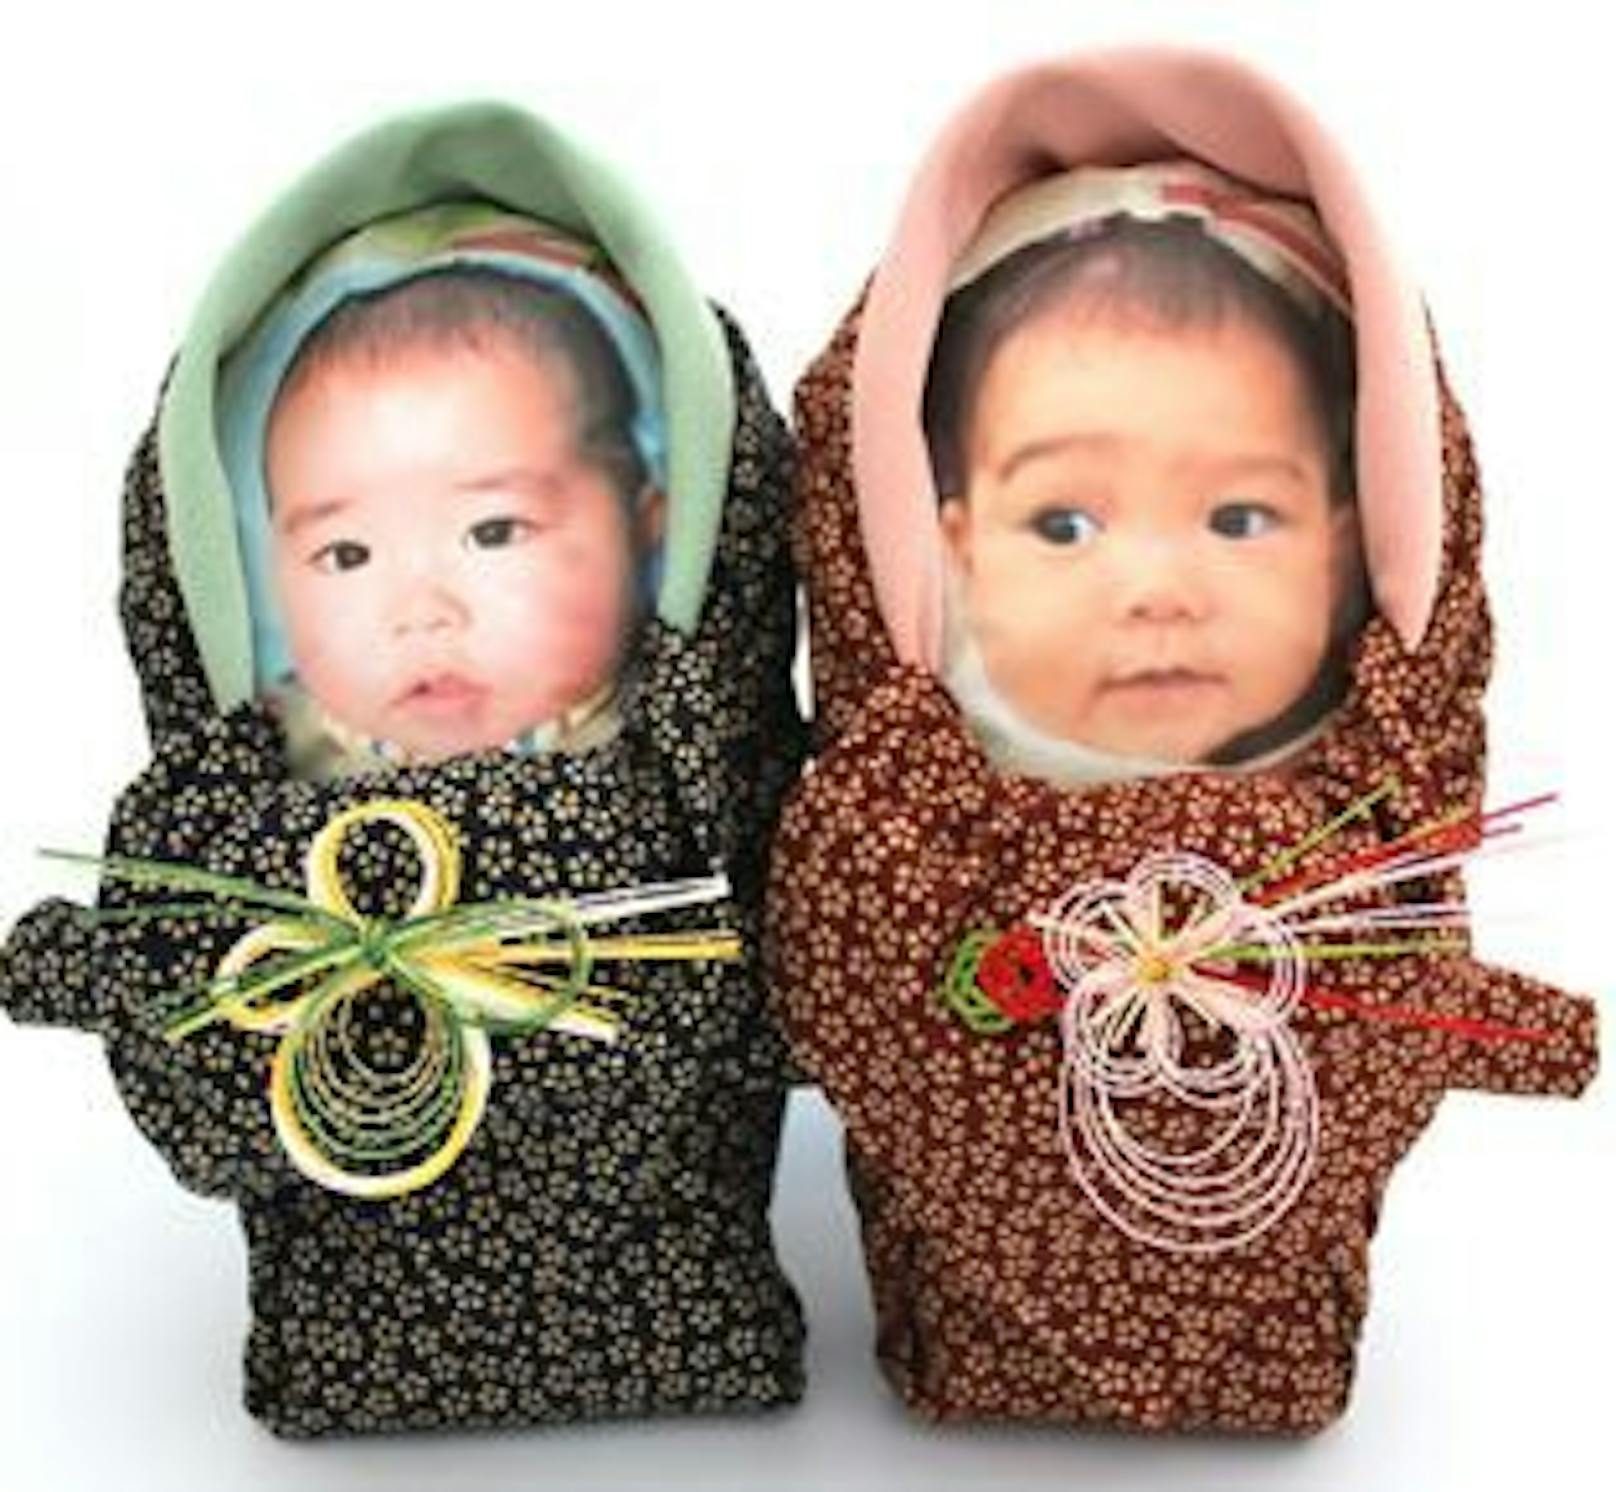 Die Reissäcke entsprechen dem Originalgewicht des Babys und hat dessen Gesicht abgedruckt.